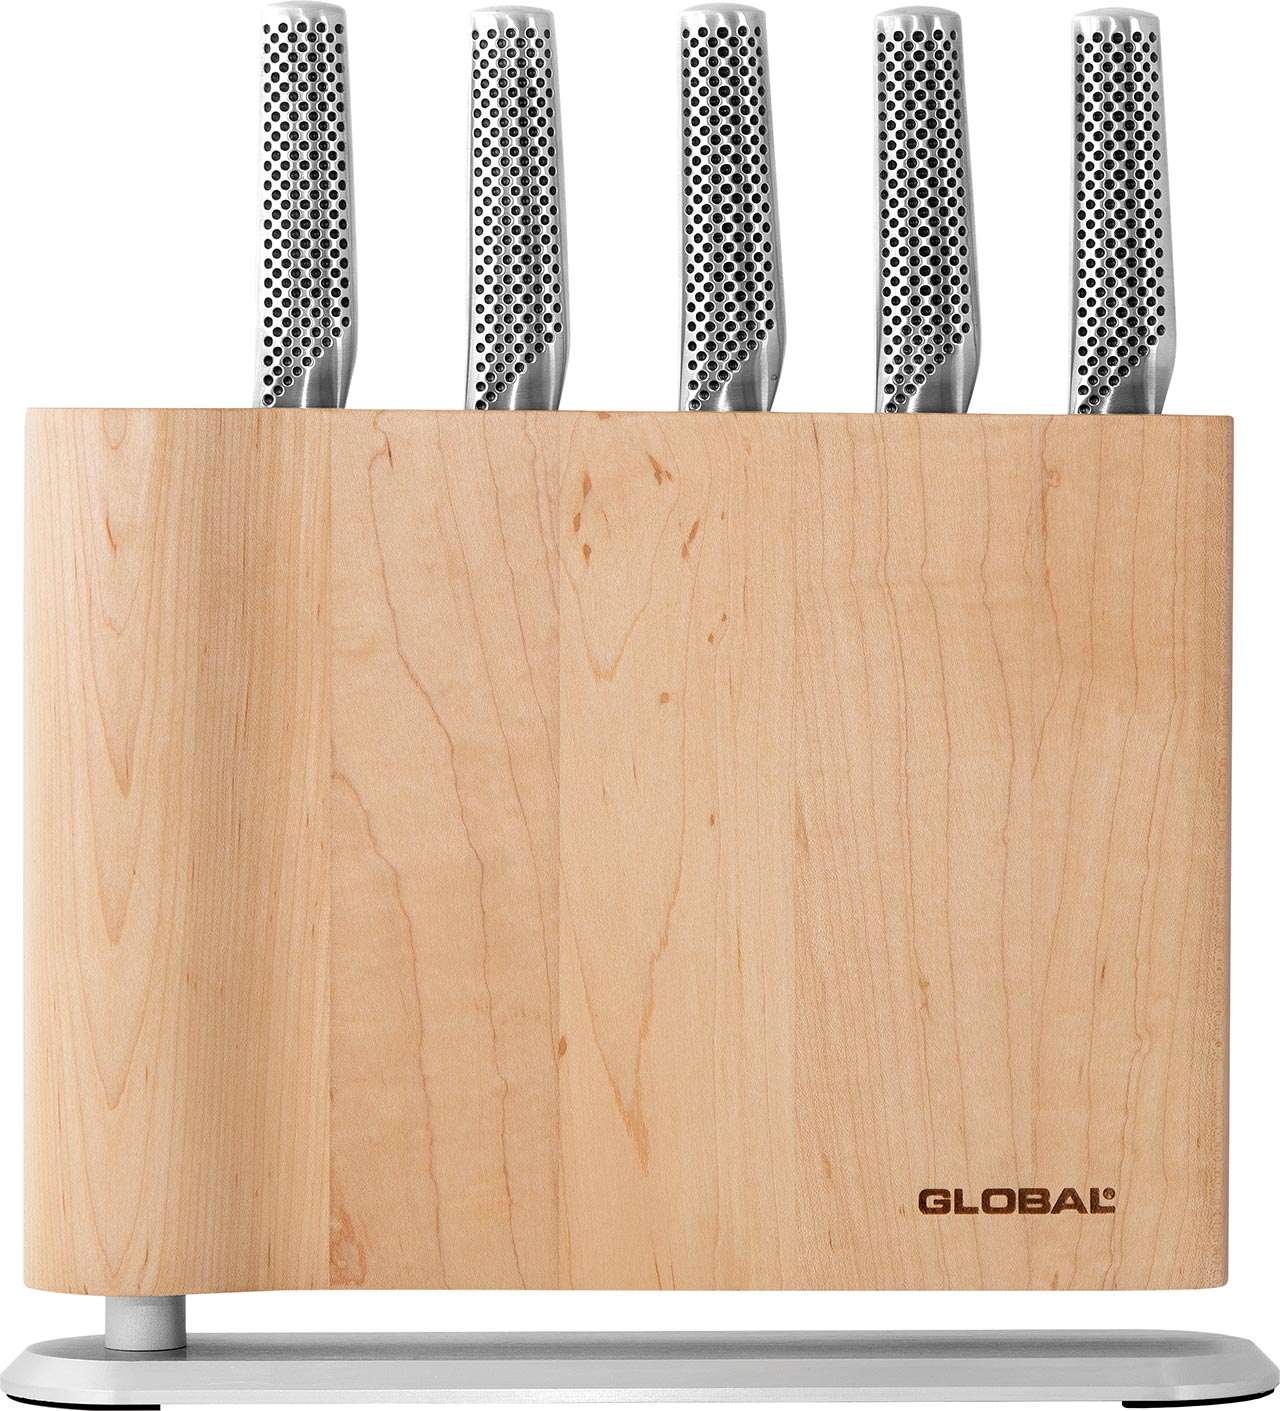 Global Uku 6-piece Knife Block Set